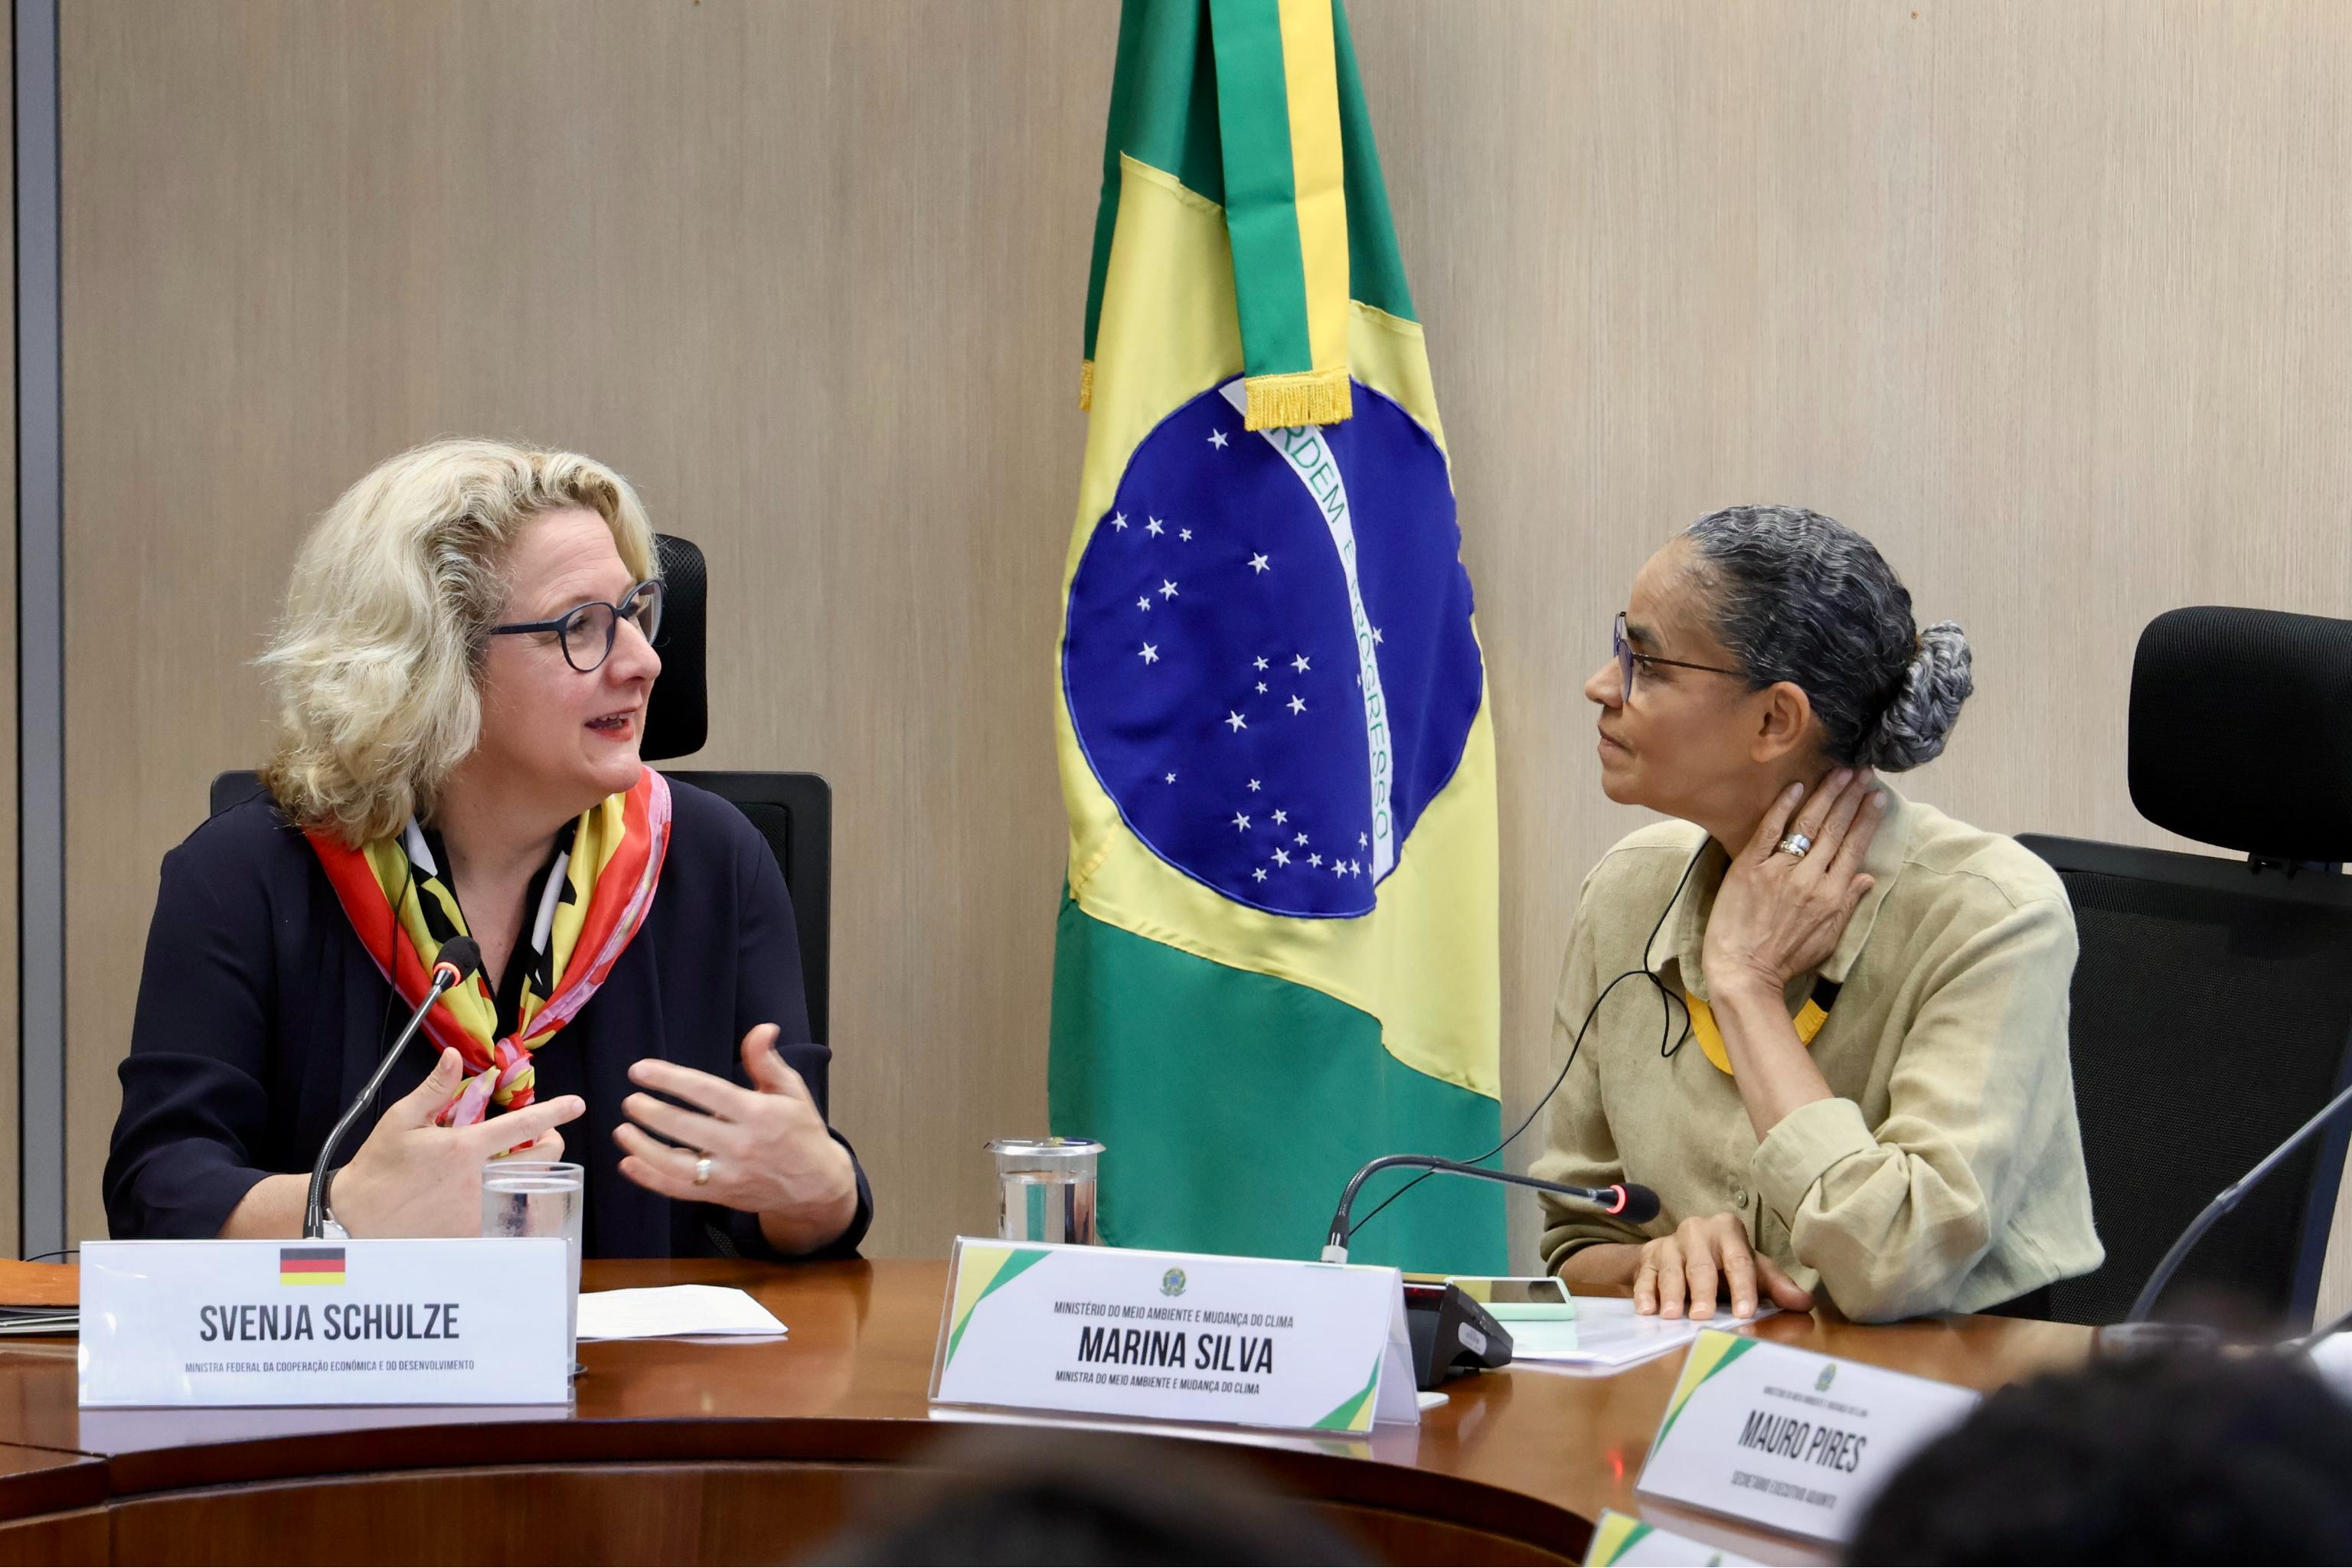 Development Minister Svenja Schulze and Brazil’s Environment Minister Marina Silva